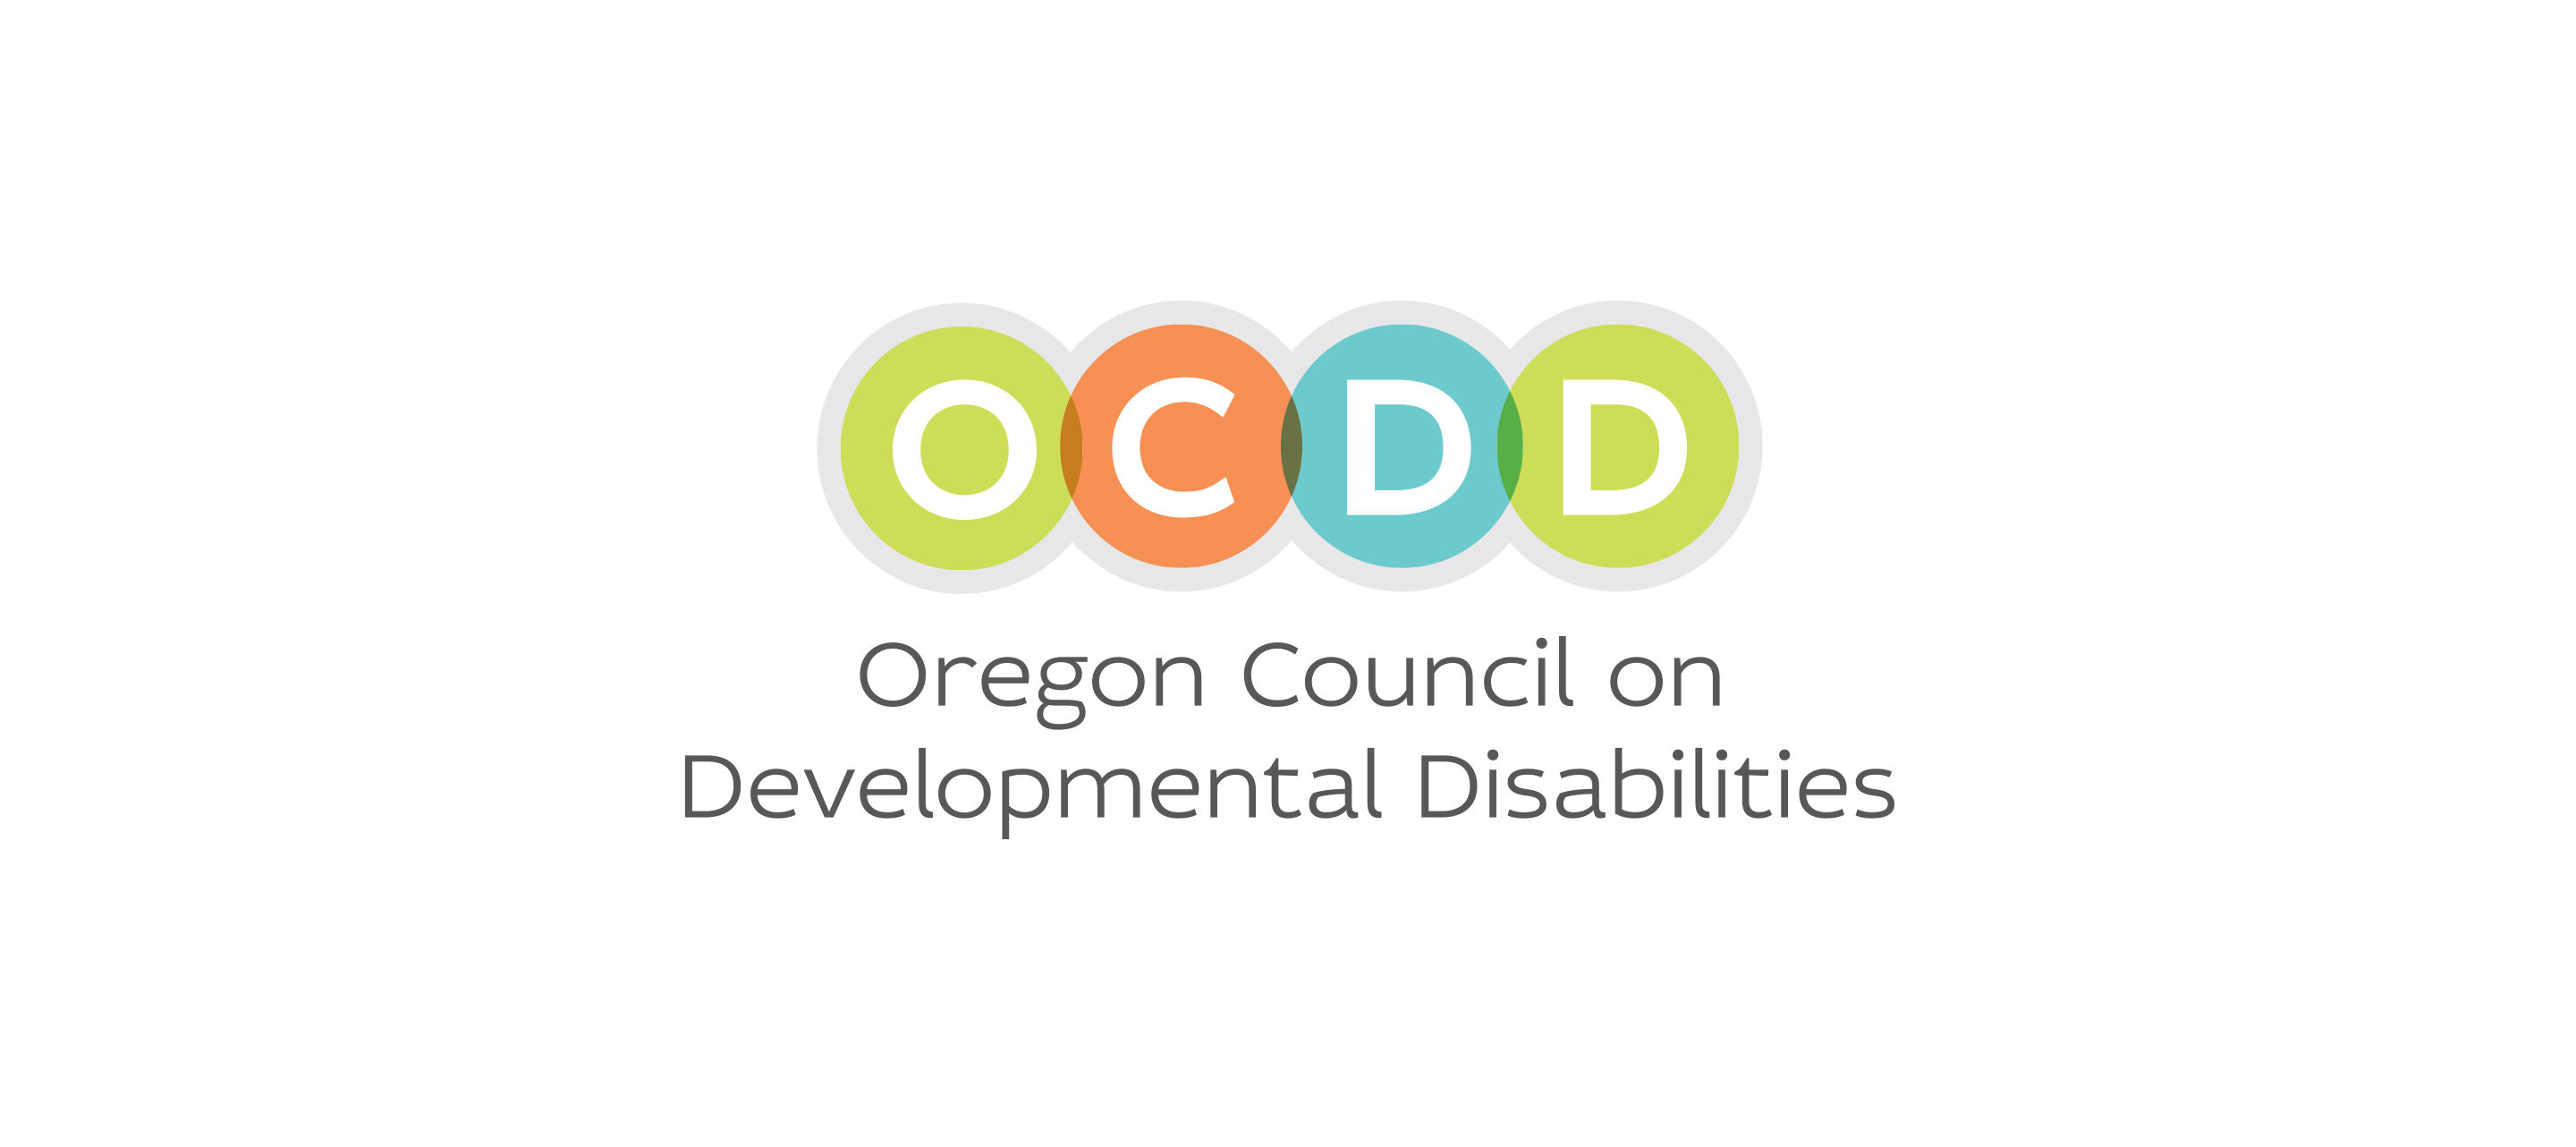 ocdd_logo